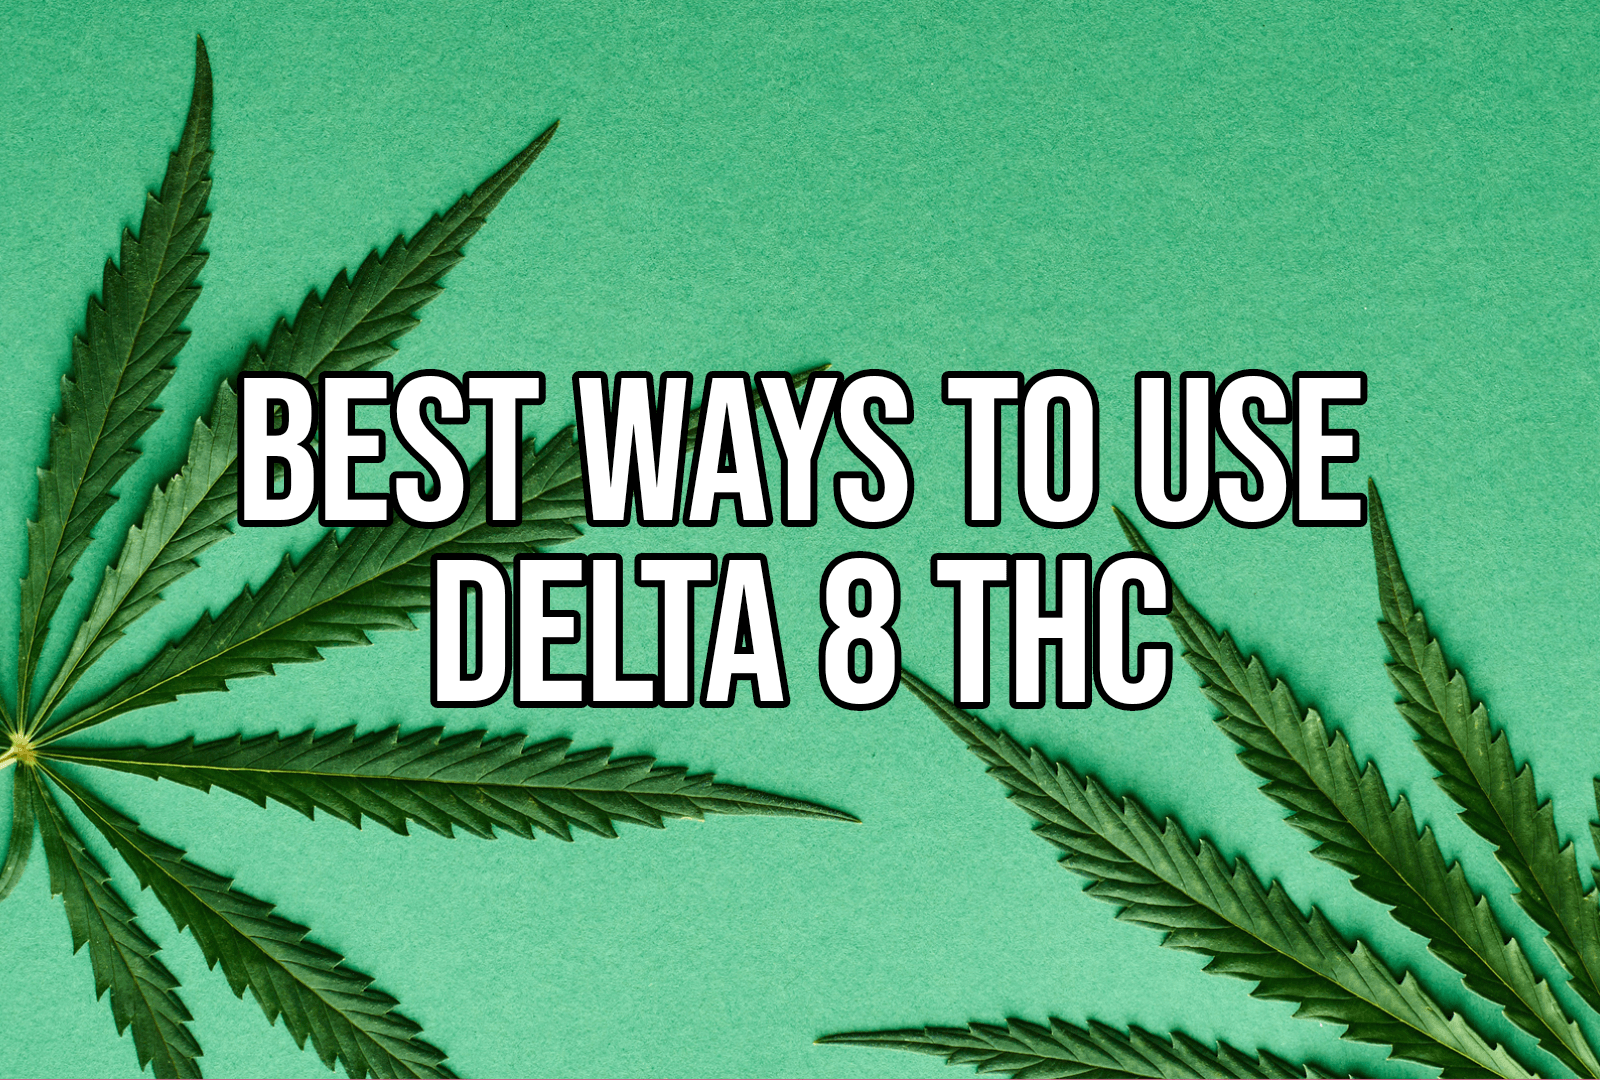 Best Ways to Use Delta 8 THC